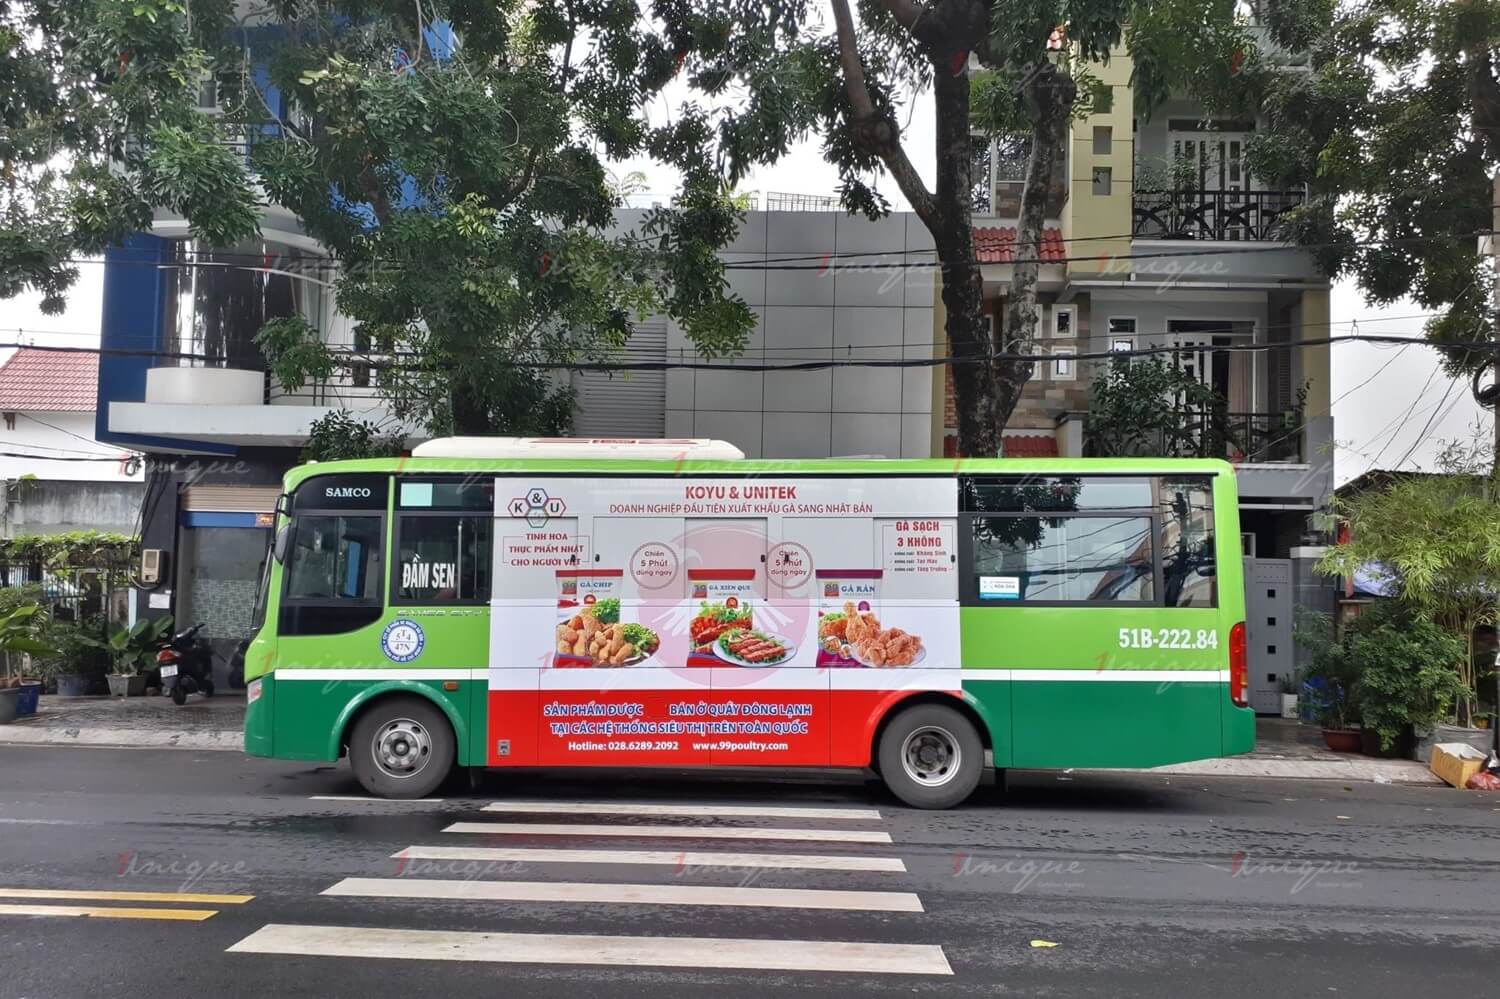 quảng cáo thực phẩm trên xe buýt